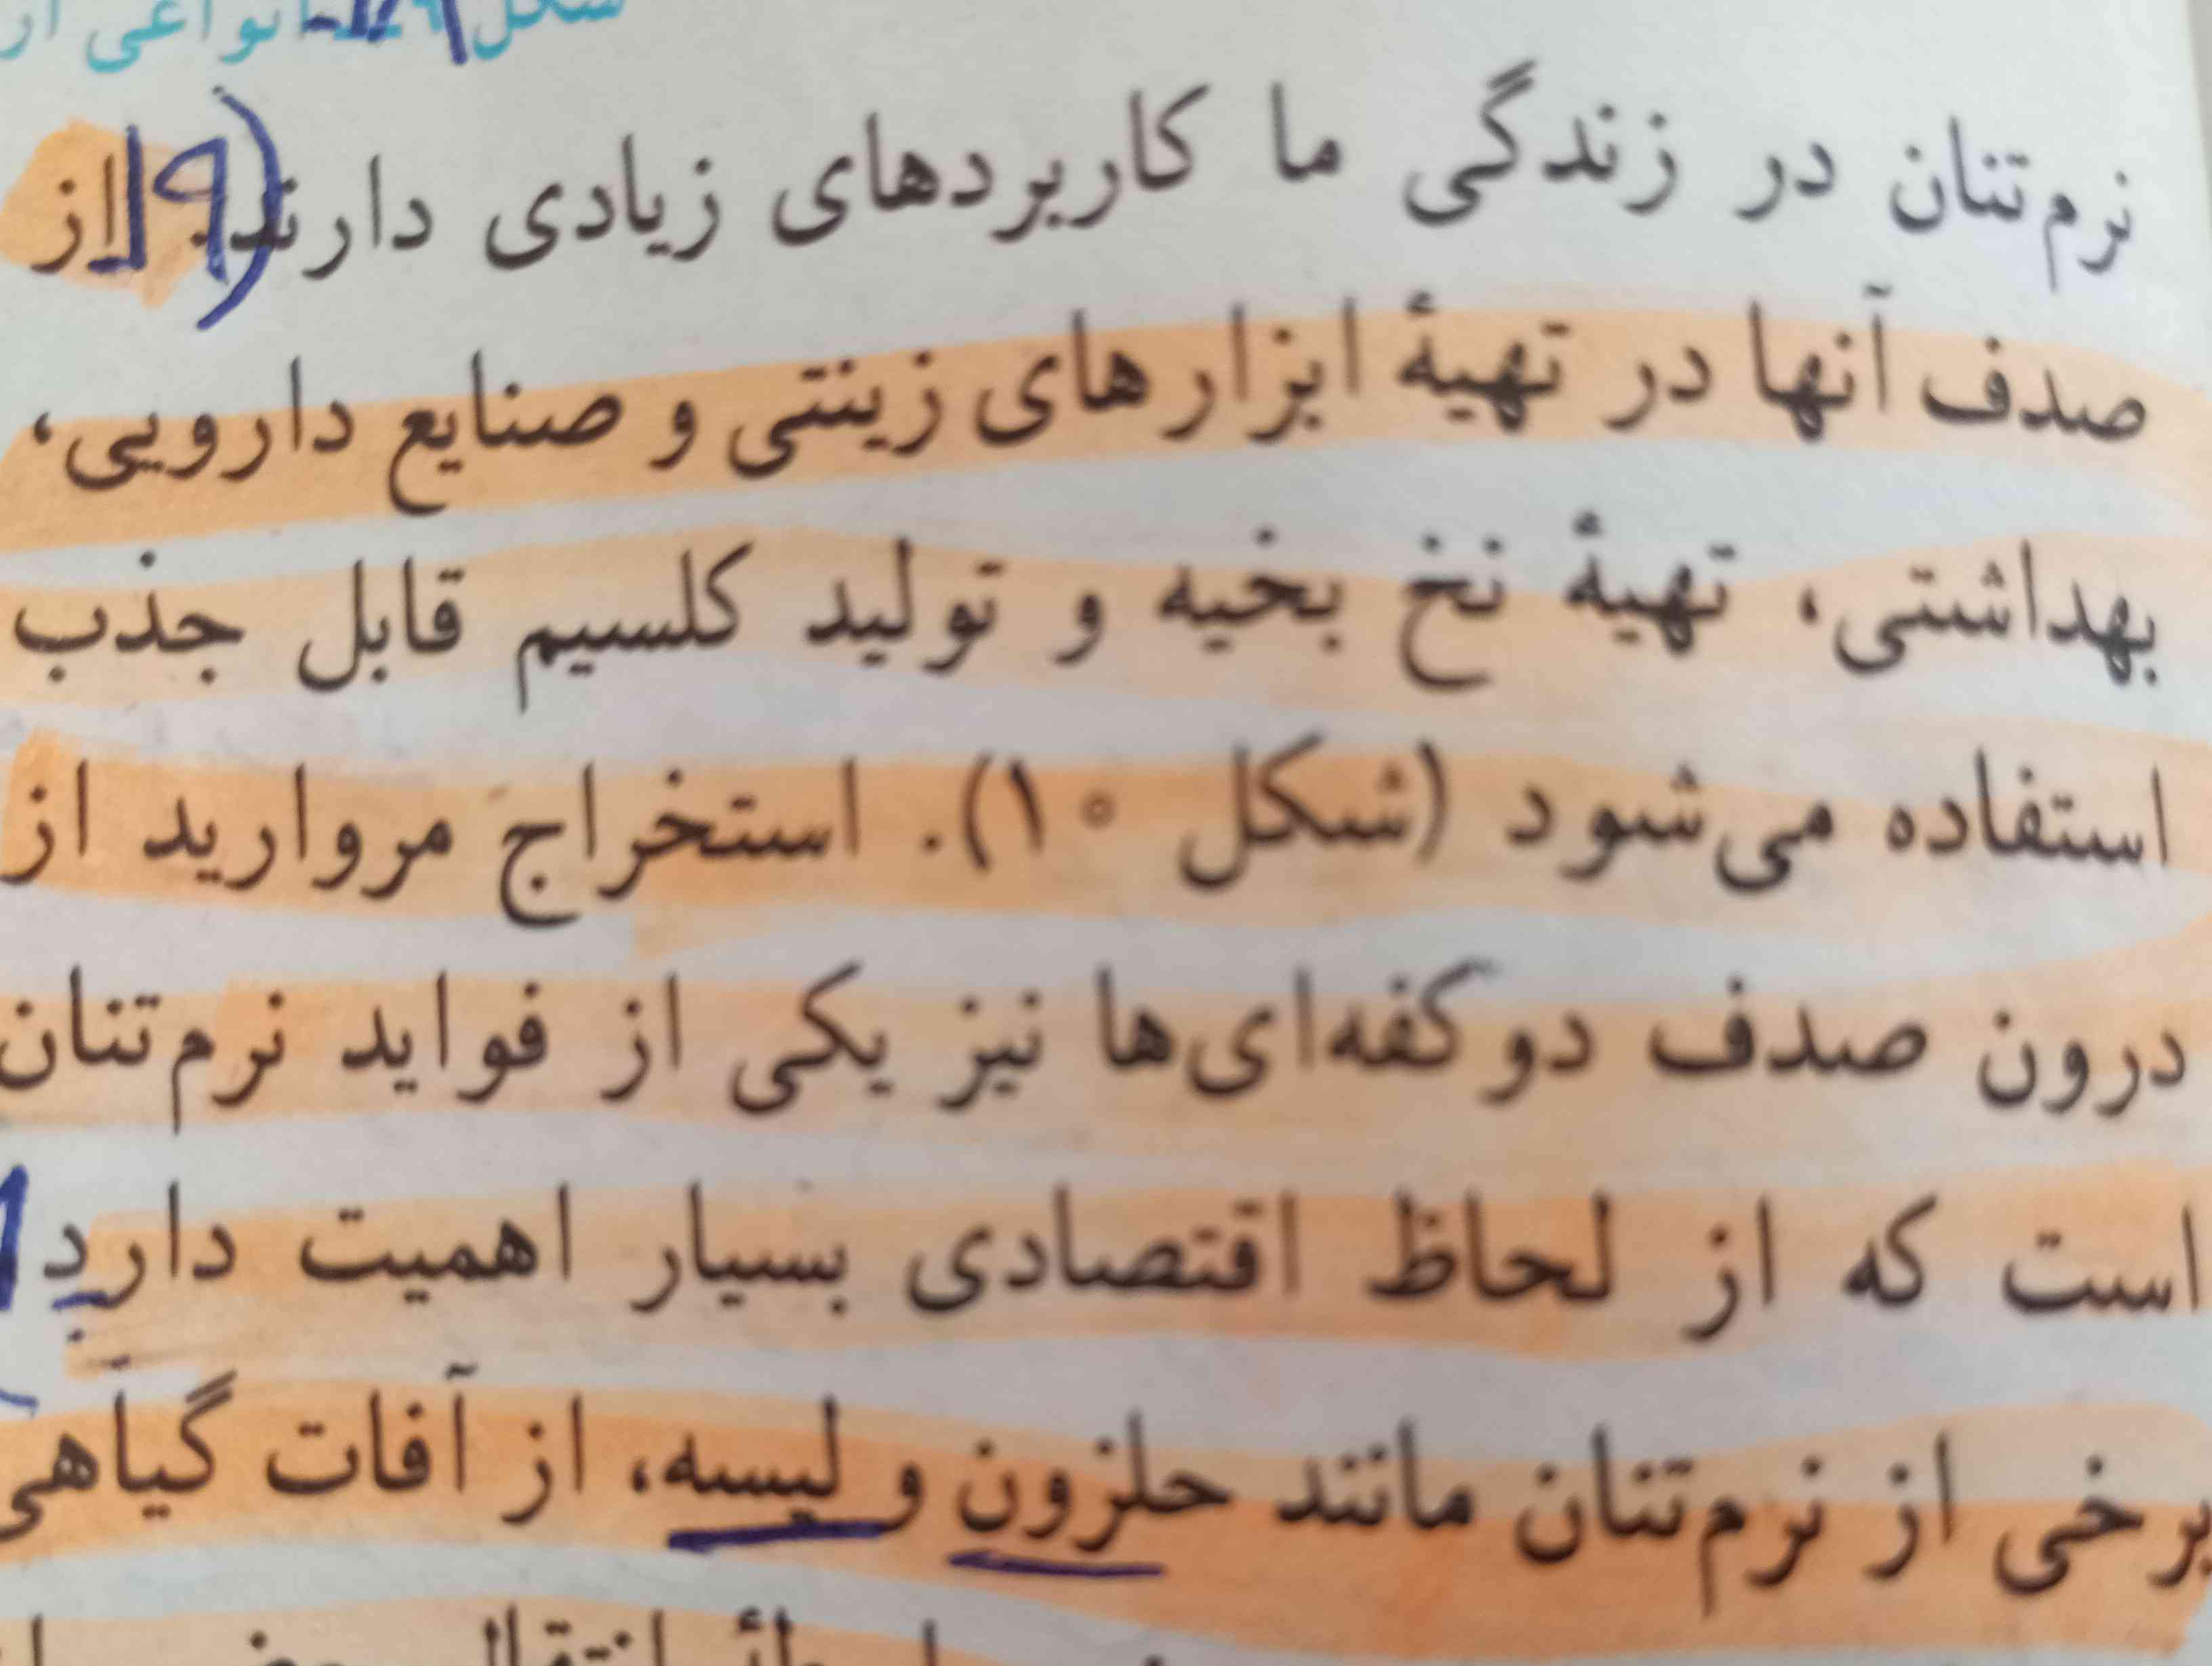 صفحه 147علوم میشه خلاصش رو بگید 